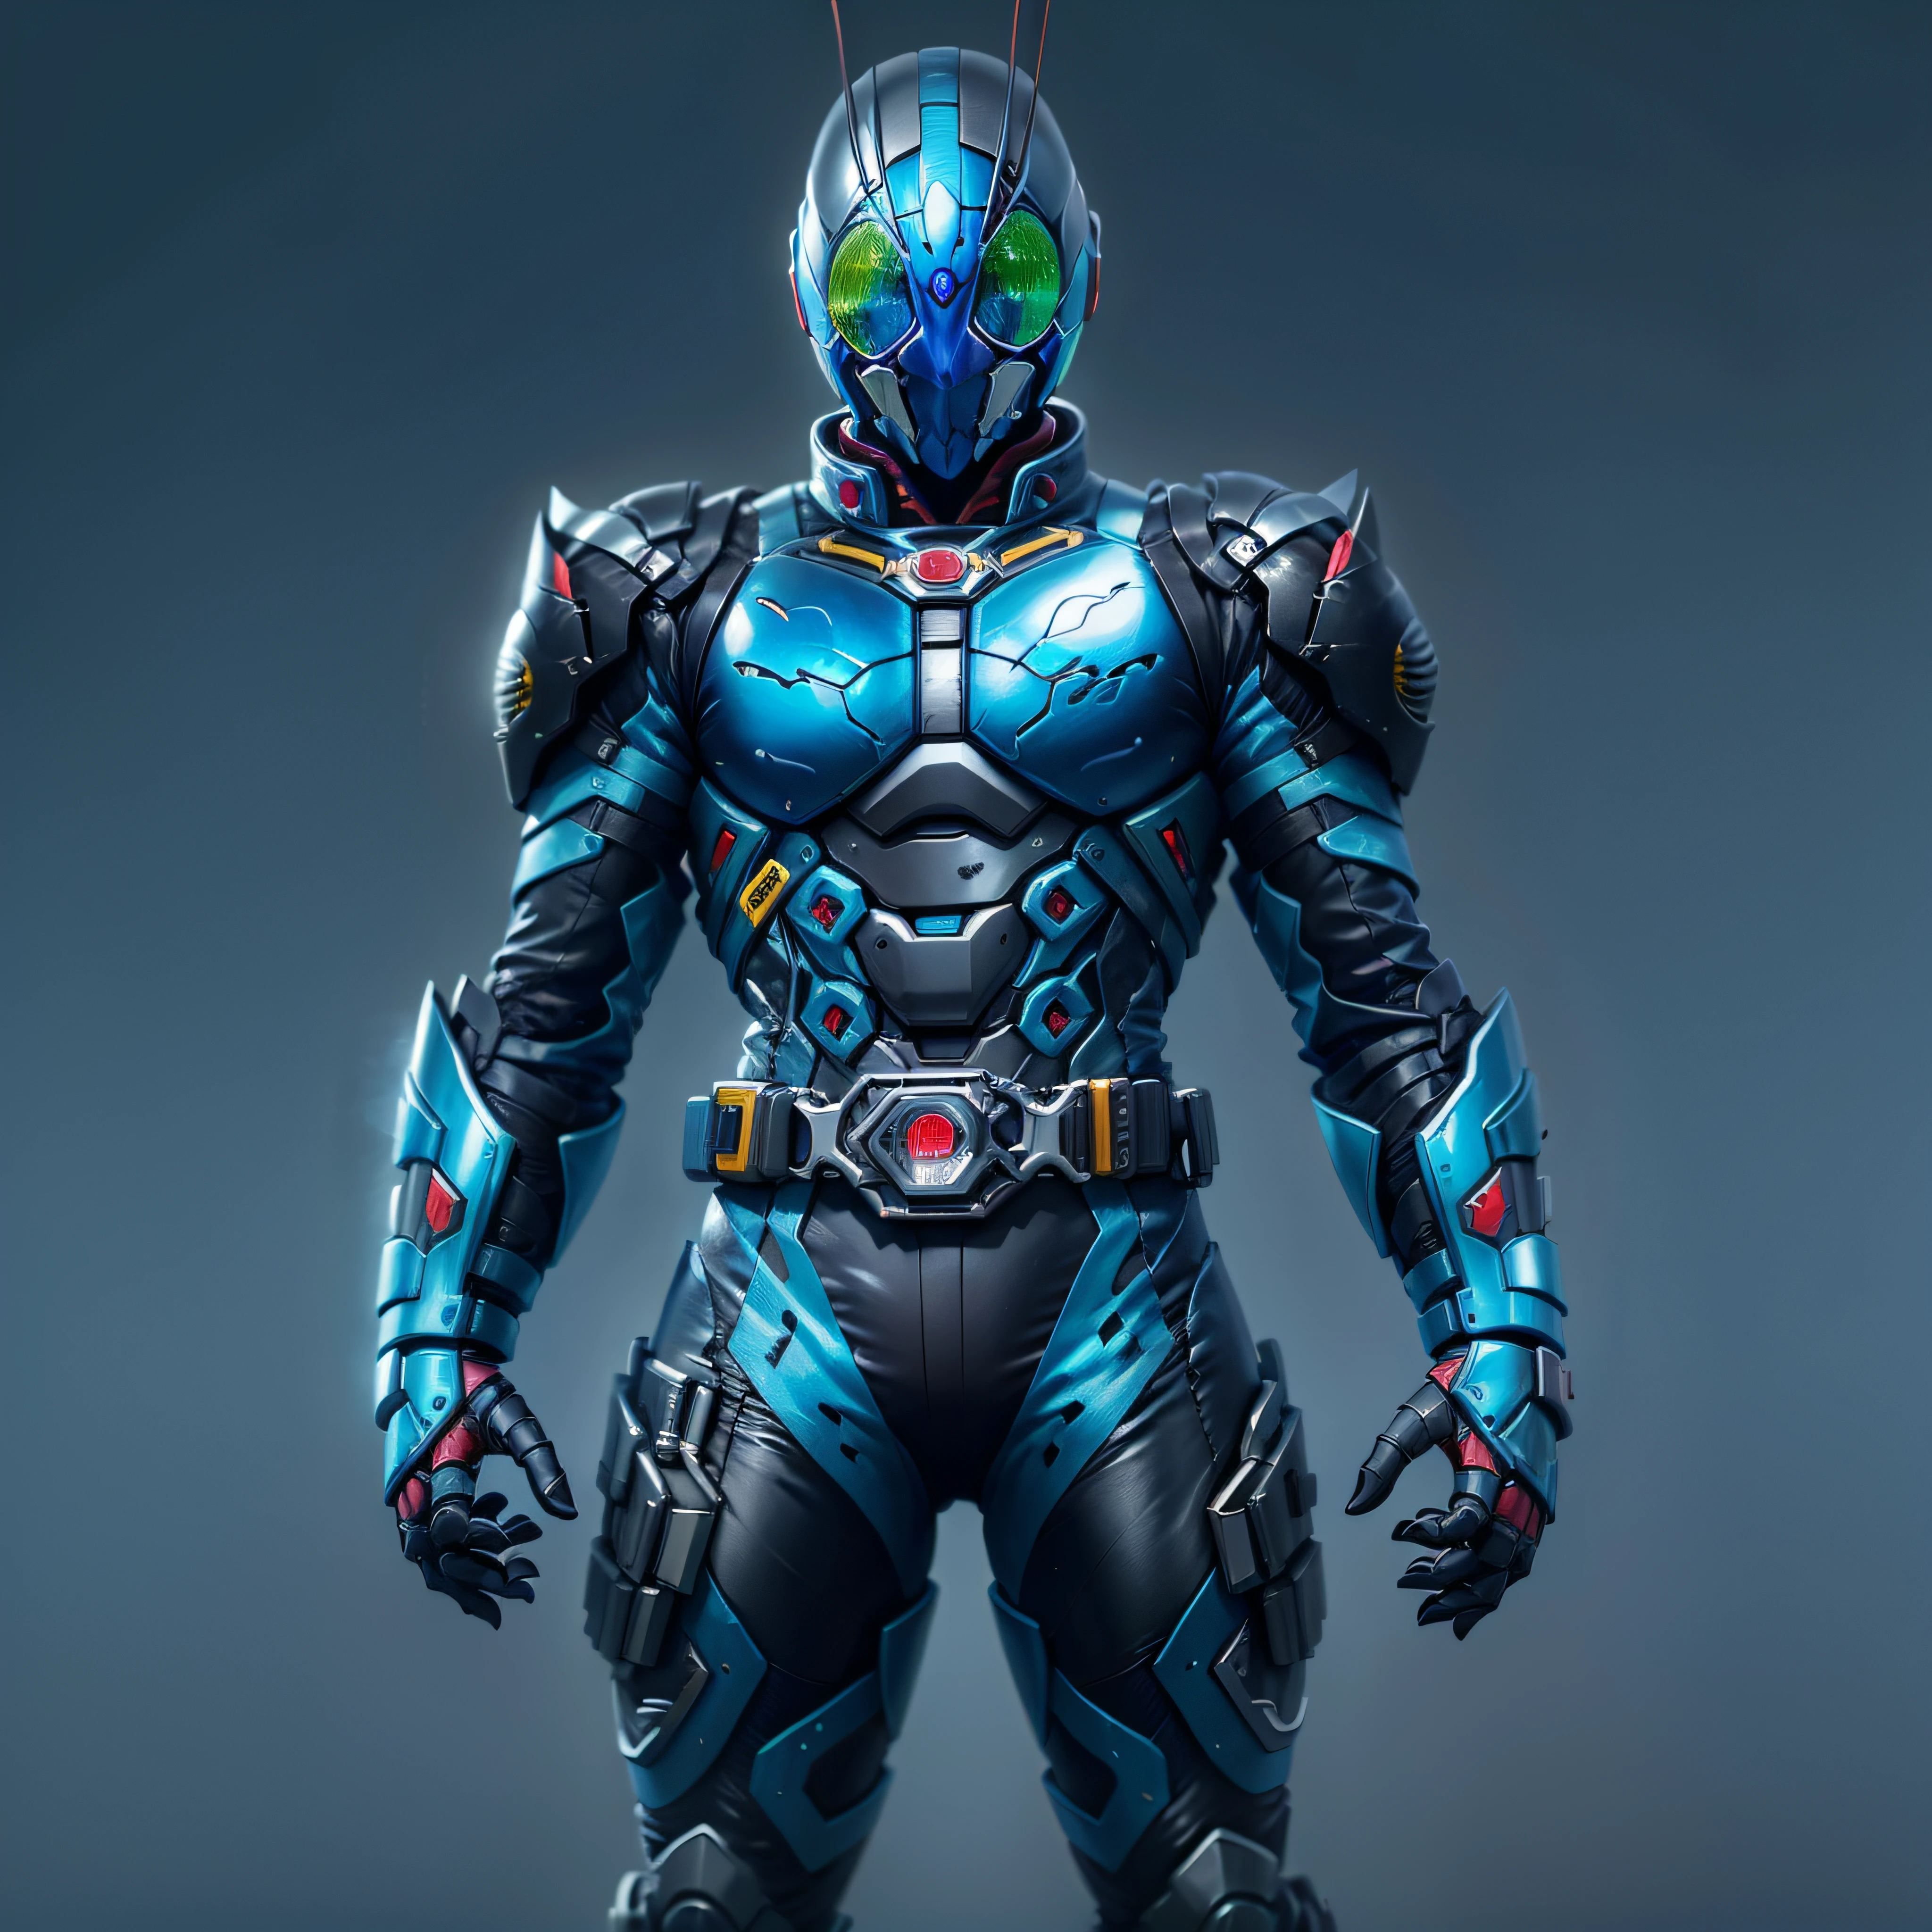 藍色假面騎士, 银甲, 灰色和黑色的衣服, 藍色科技套裝, 密探, 機器人